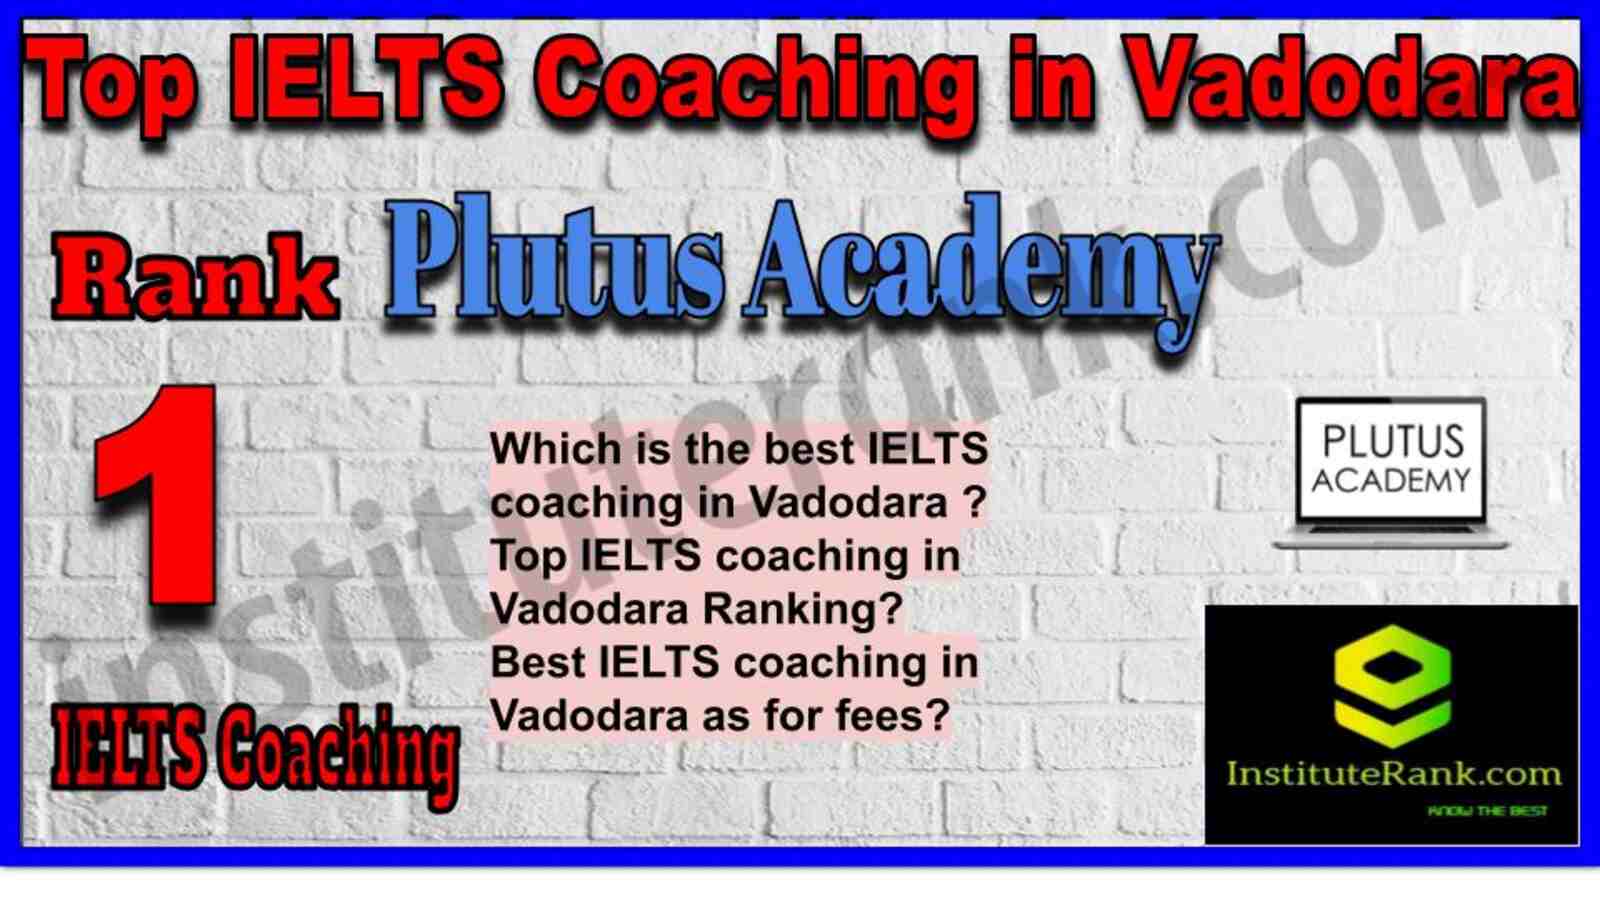 Rank 1. Plutus Academy | Best IELTS Coaching in Vadodara